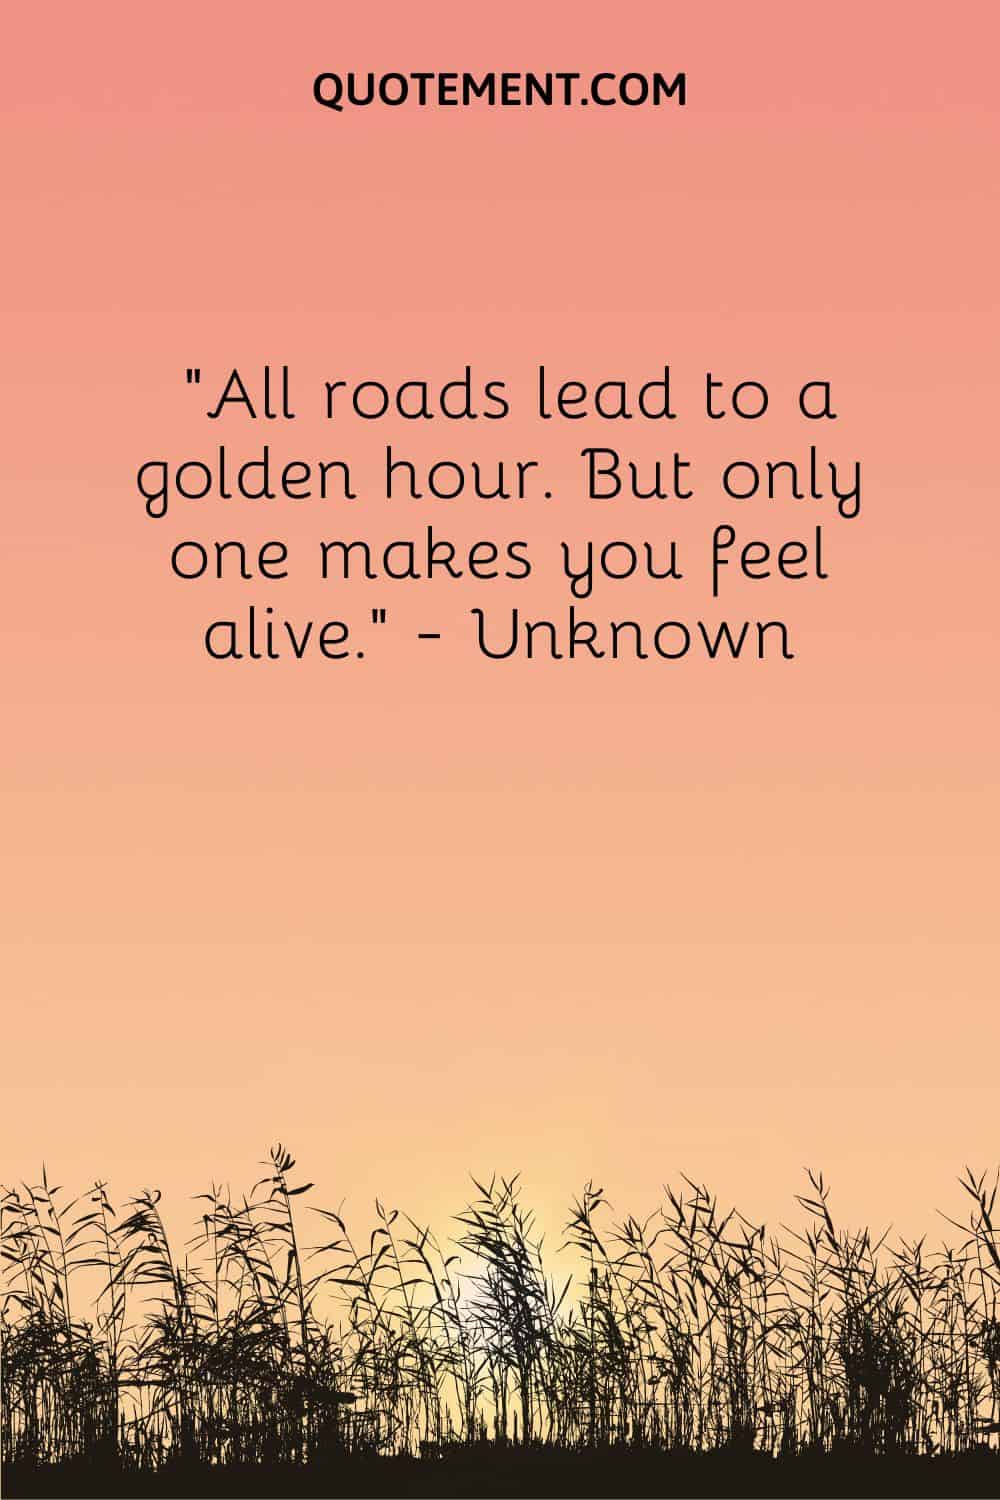 Todos los caminos conducen a una hora dorada. Pero sólo uno te hace sentir vivo